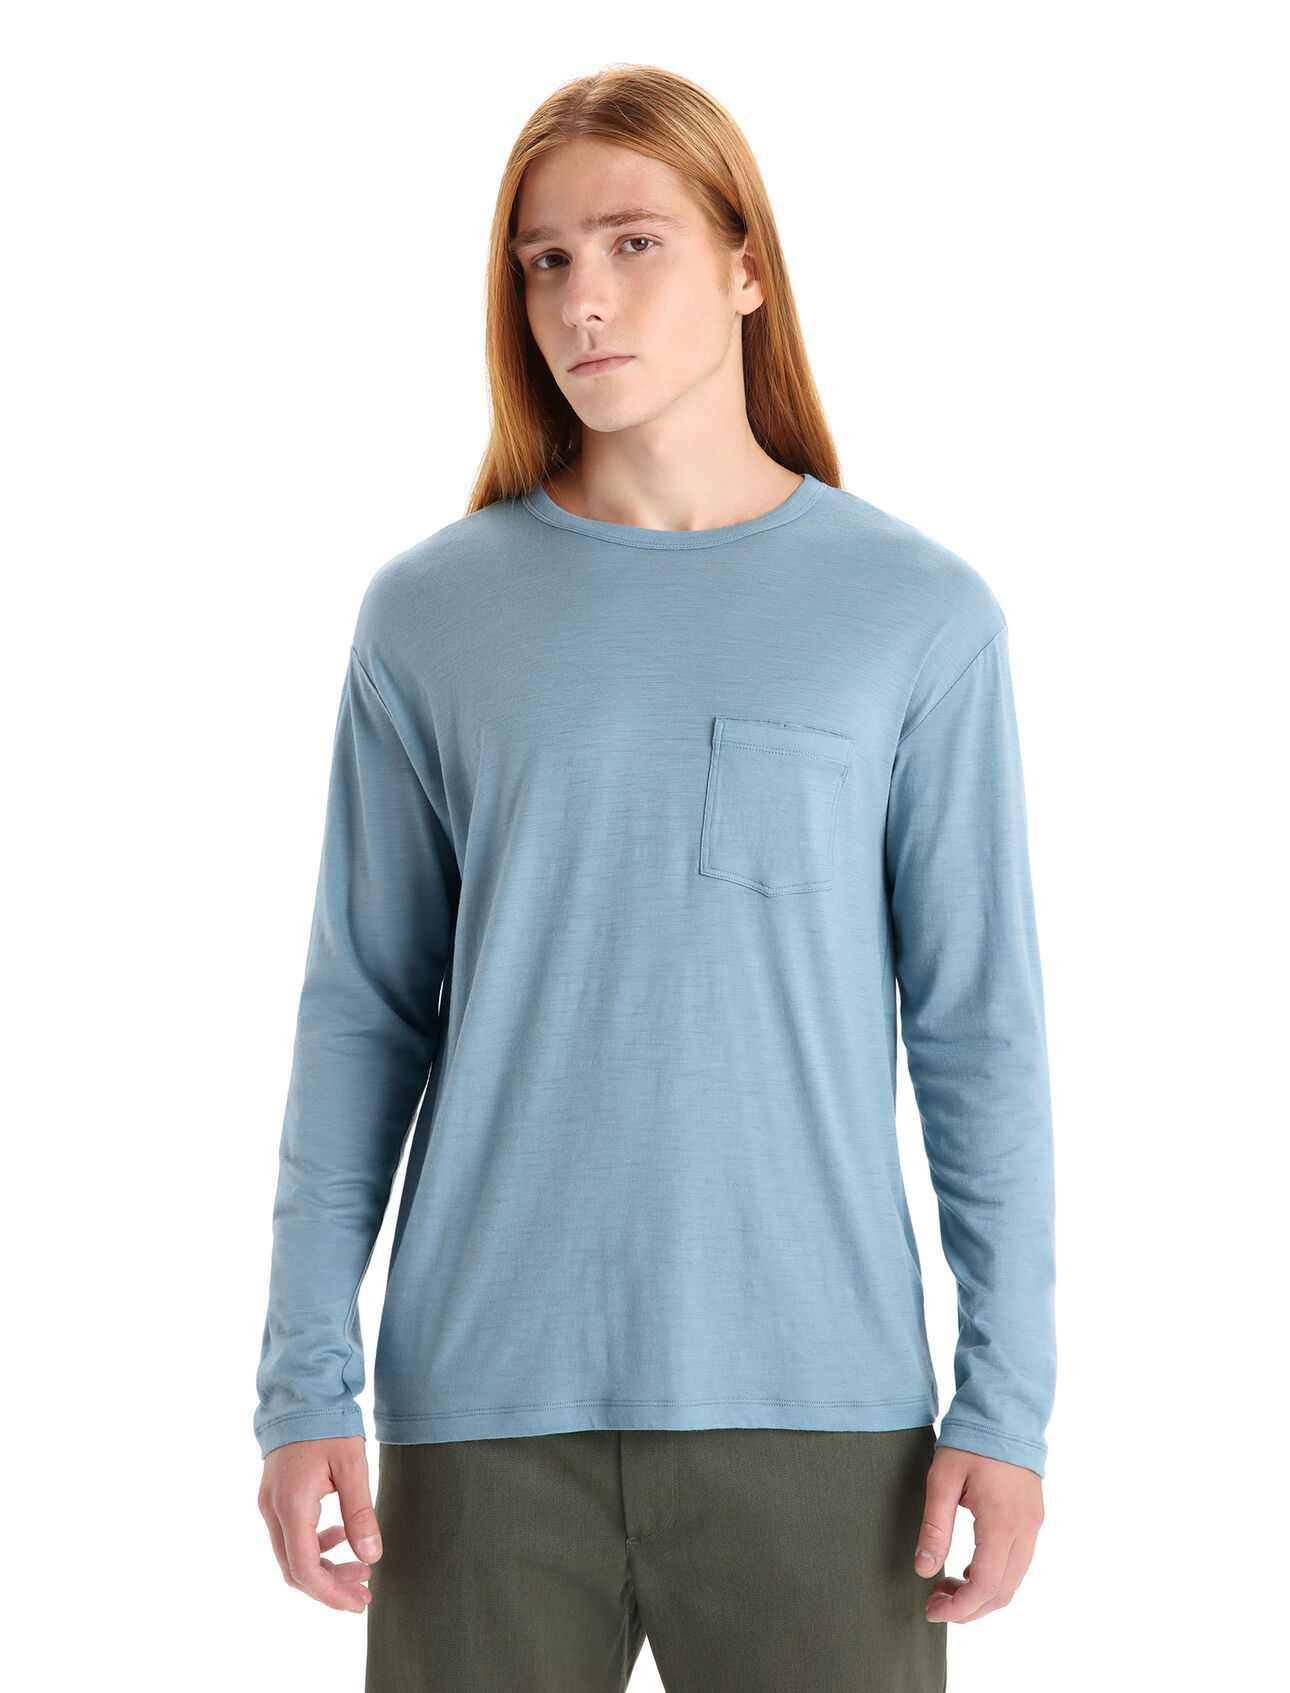 Merino Granary Langarmshirt mit Brusttasche Herren Ein klassisches Pocket T-Shirt mit legerer Passform, das Komfort mit Stil verbindet, das langärmlige Granary T-Shirt mit Brusttasche ist dank 100% Merinowolle weich und atmungsaktiv. 